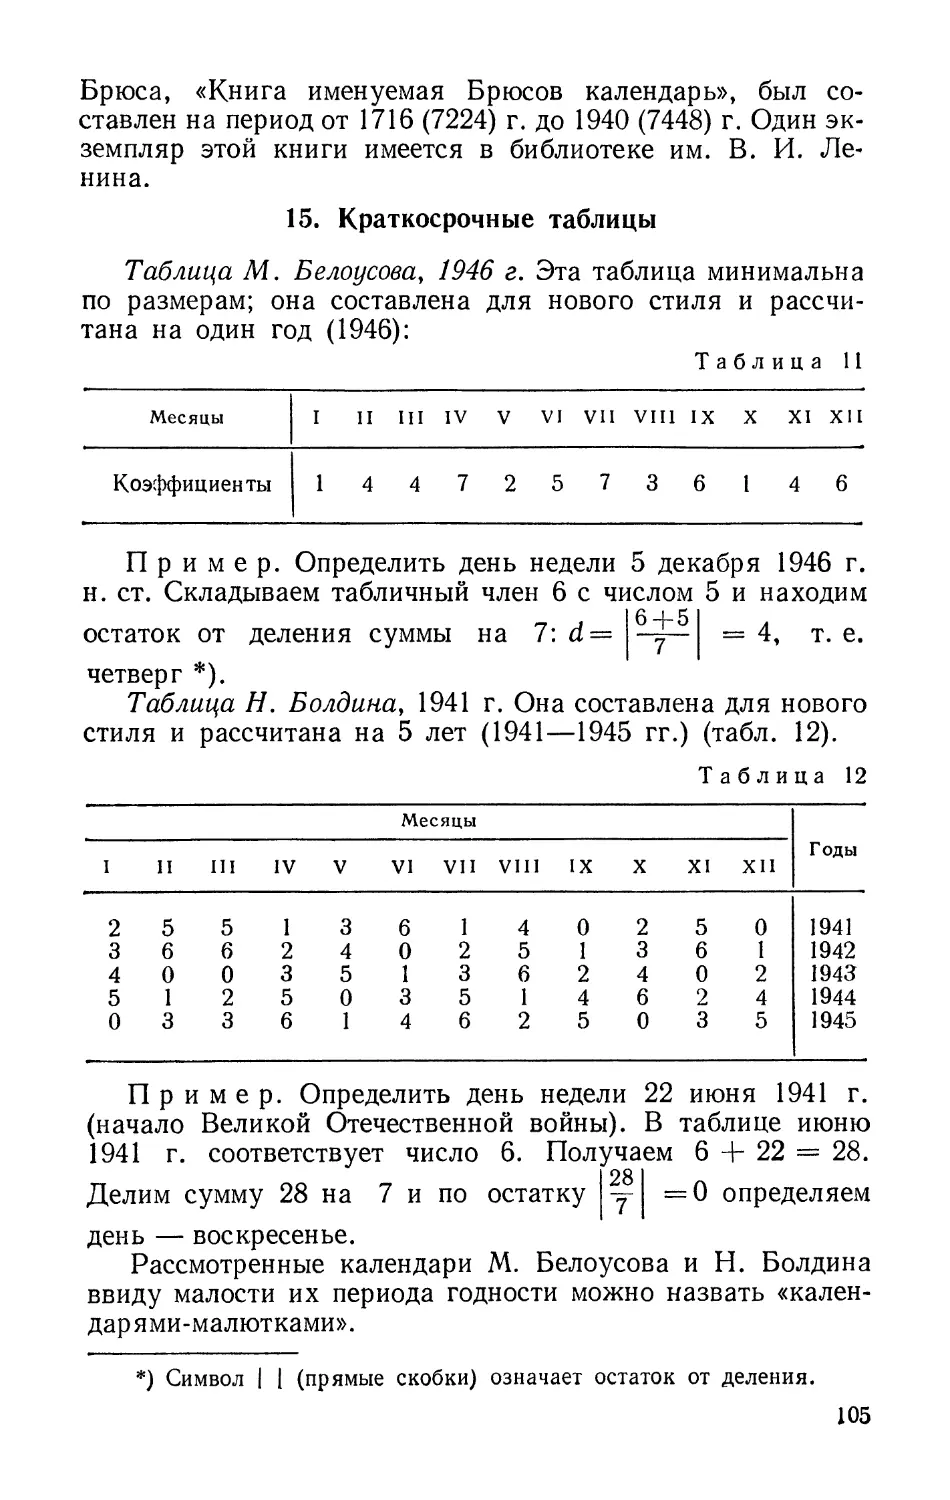 15. Краткосрочные таблицы
Таблица Н. Болдина, 1941 г.